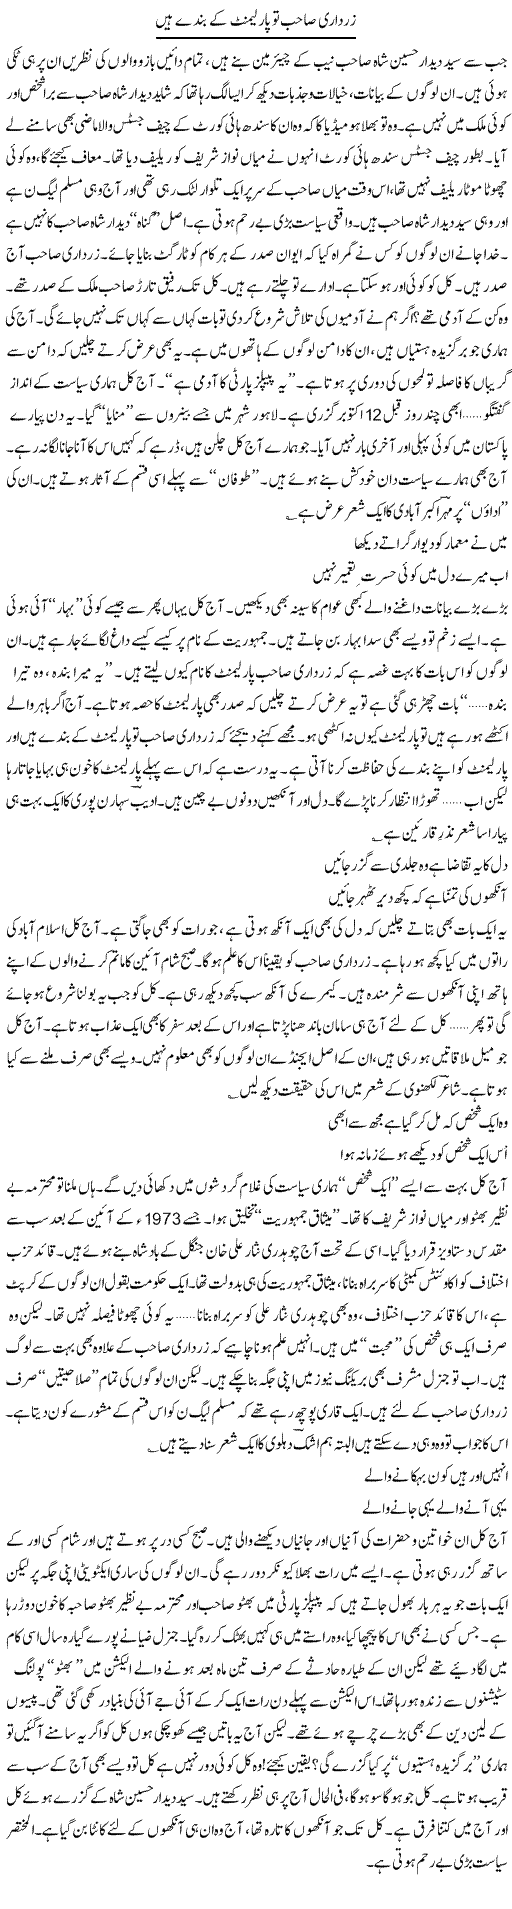 Zardari Parliament Express Column Ijaz Hafeez 17 October 2010